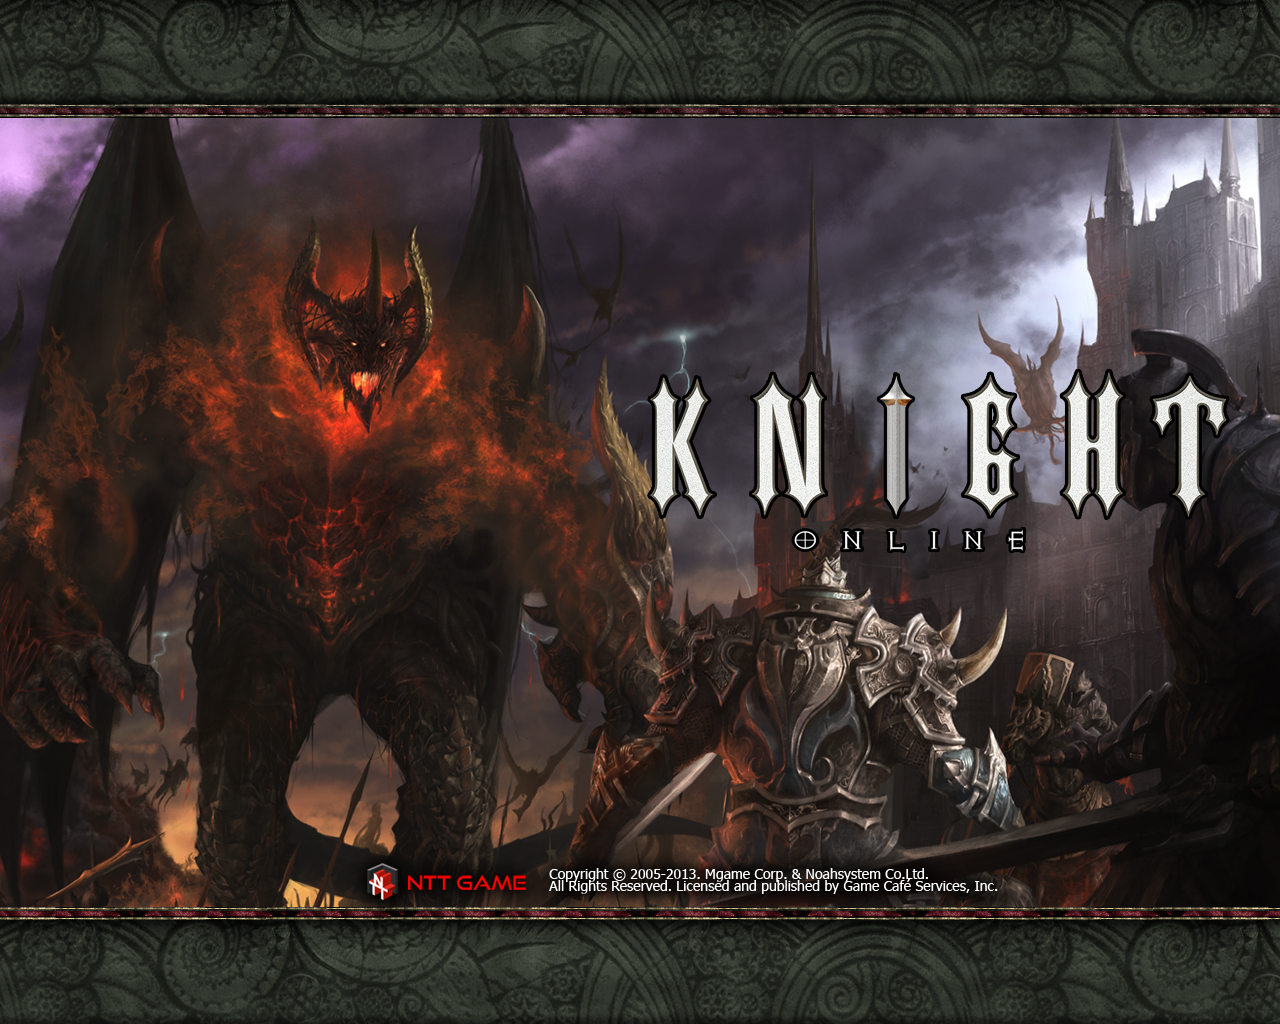 Knight Online Wallpaper S9ru8q7 4usky